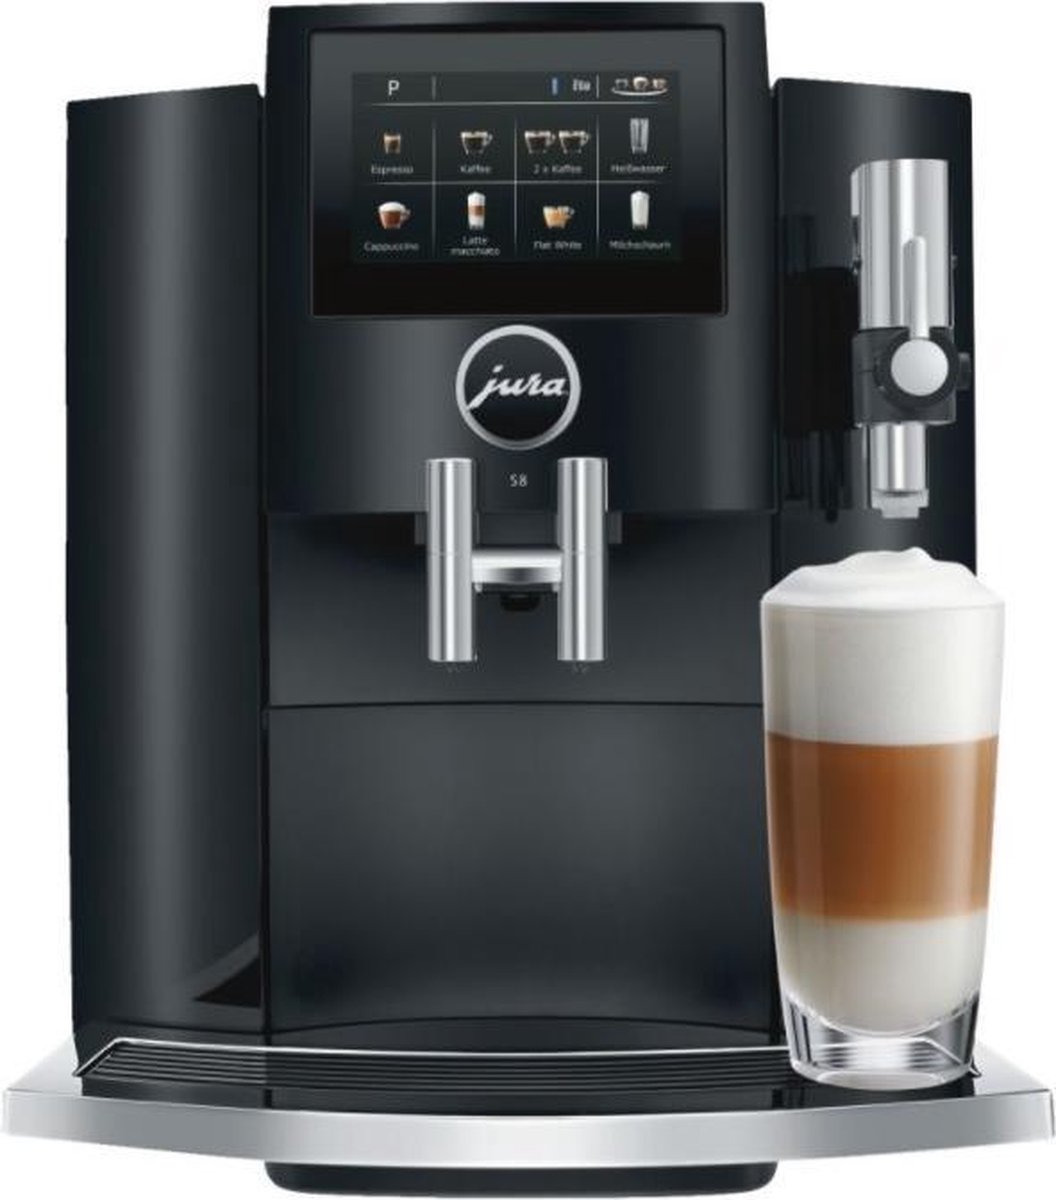 JURA-S8-EA-Piano-Black-volautomatische-espressomachine